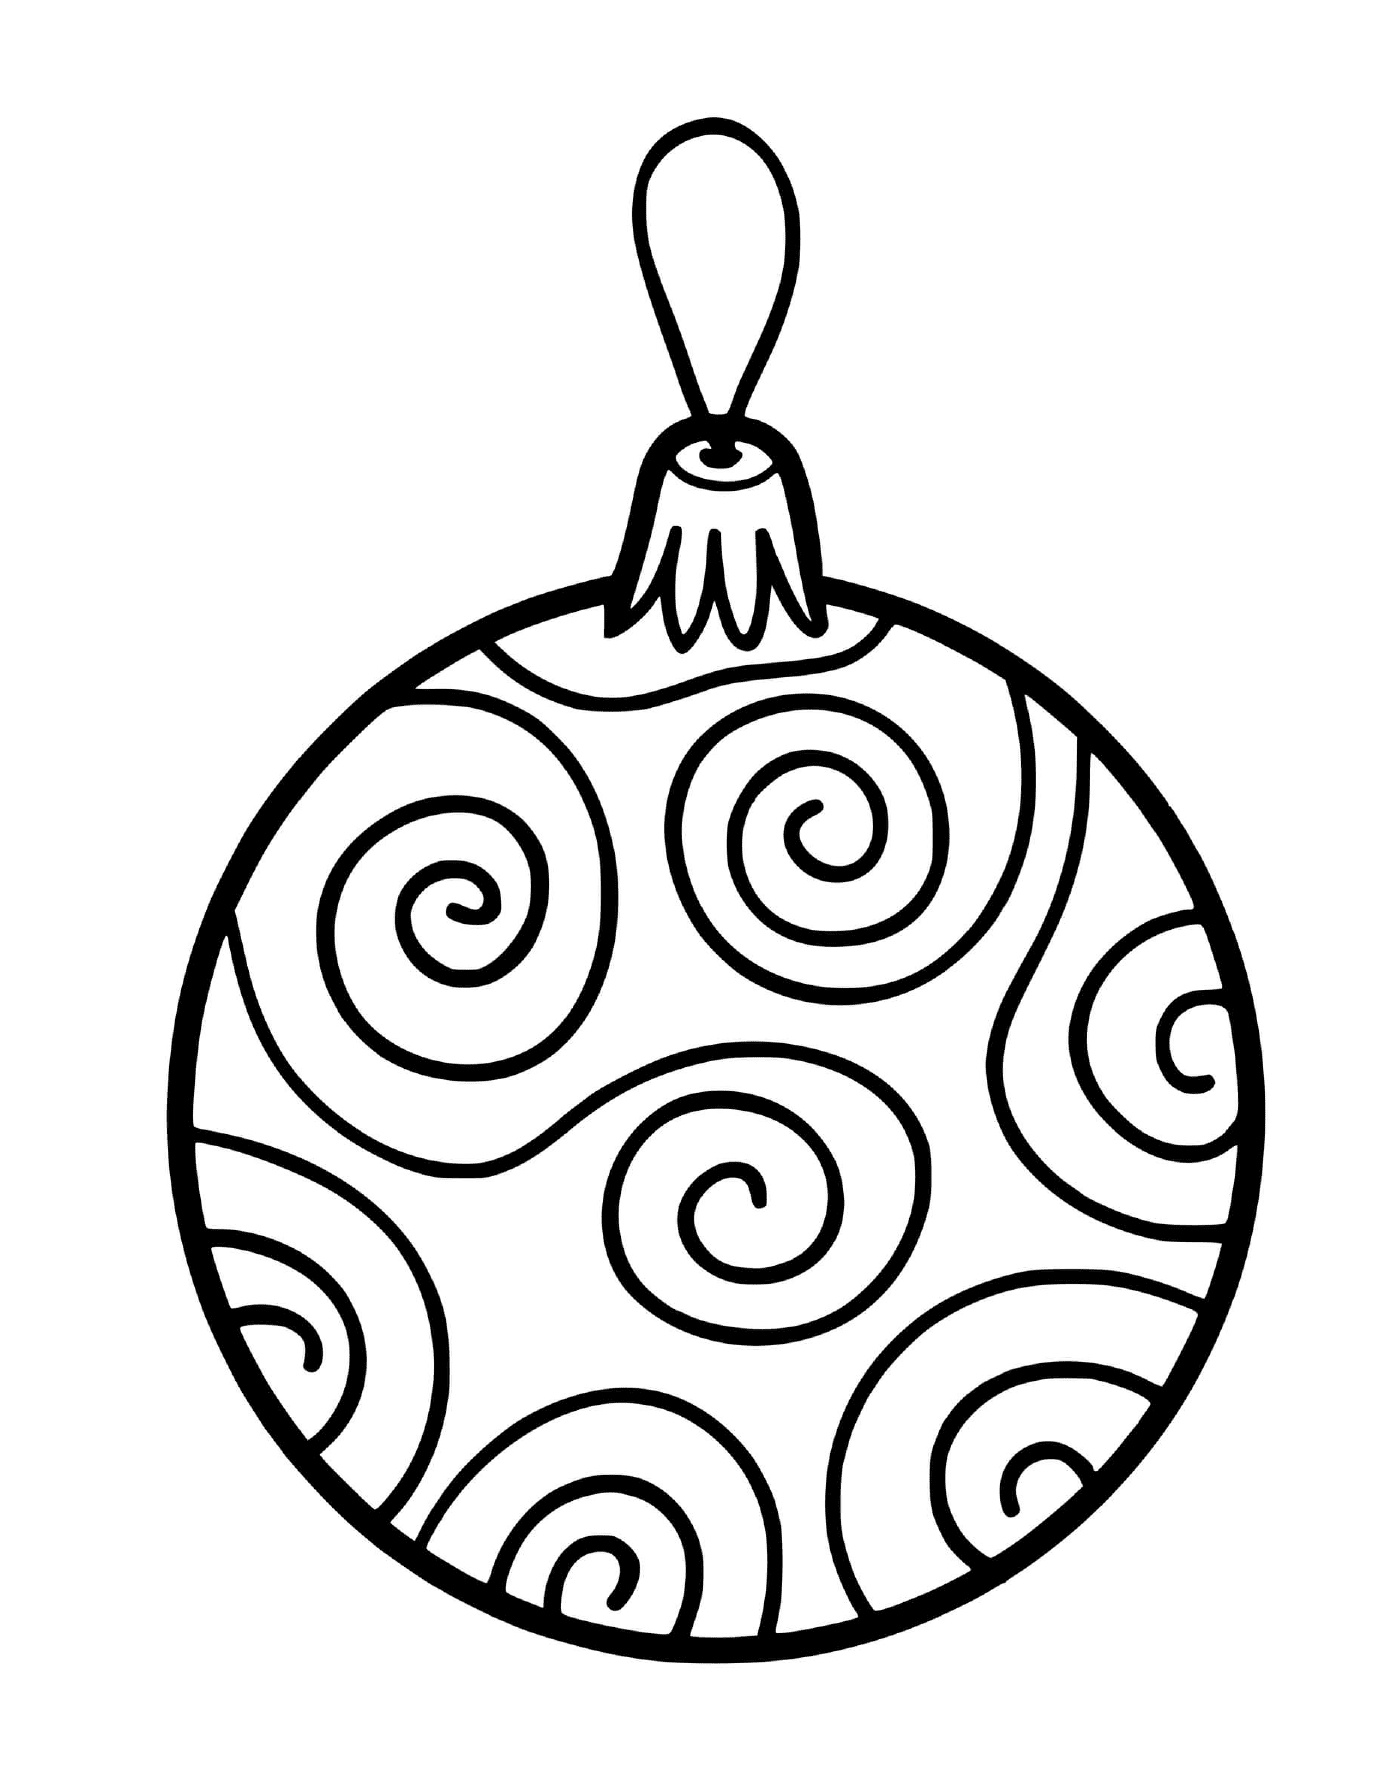  Una palla d'albero di Natale con zigzag 